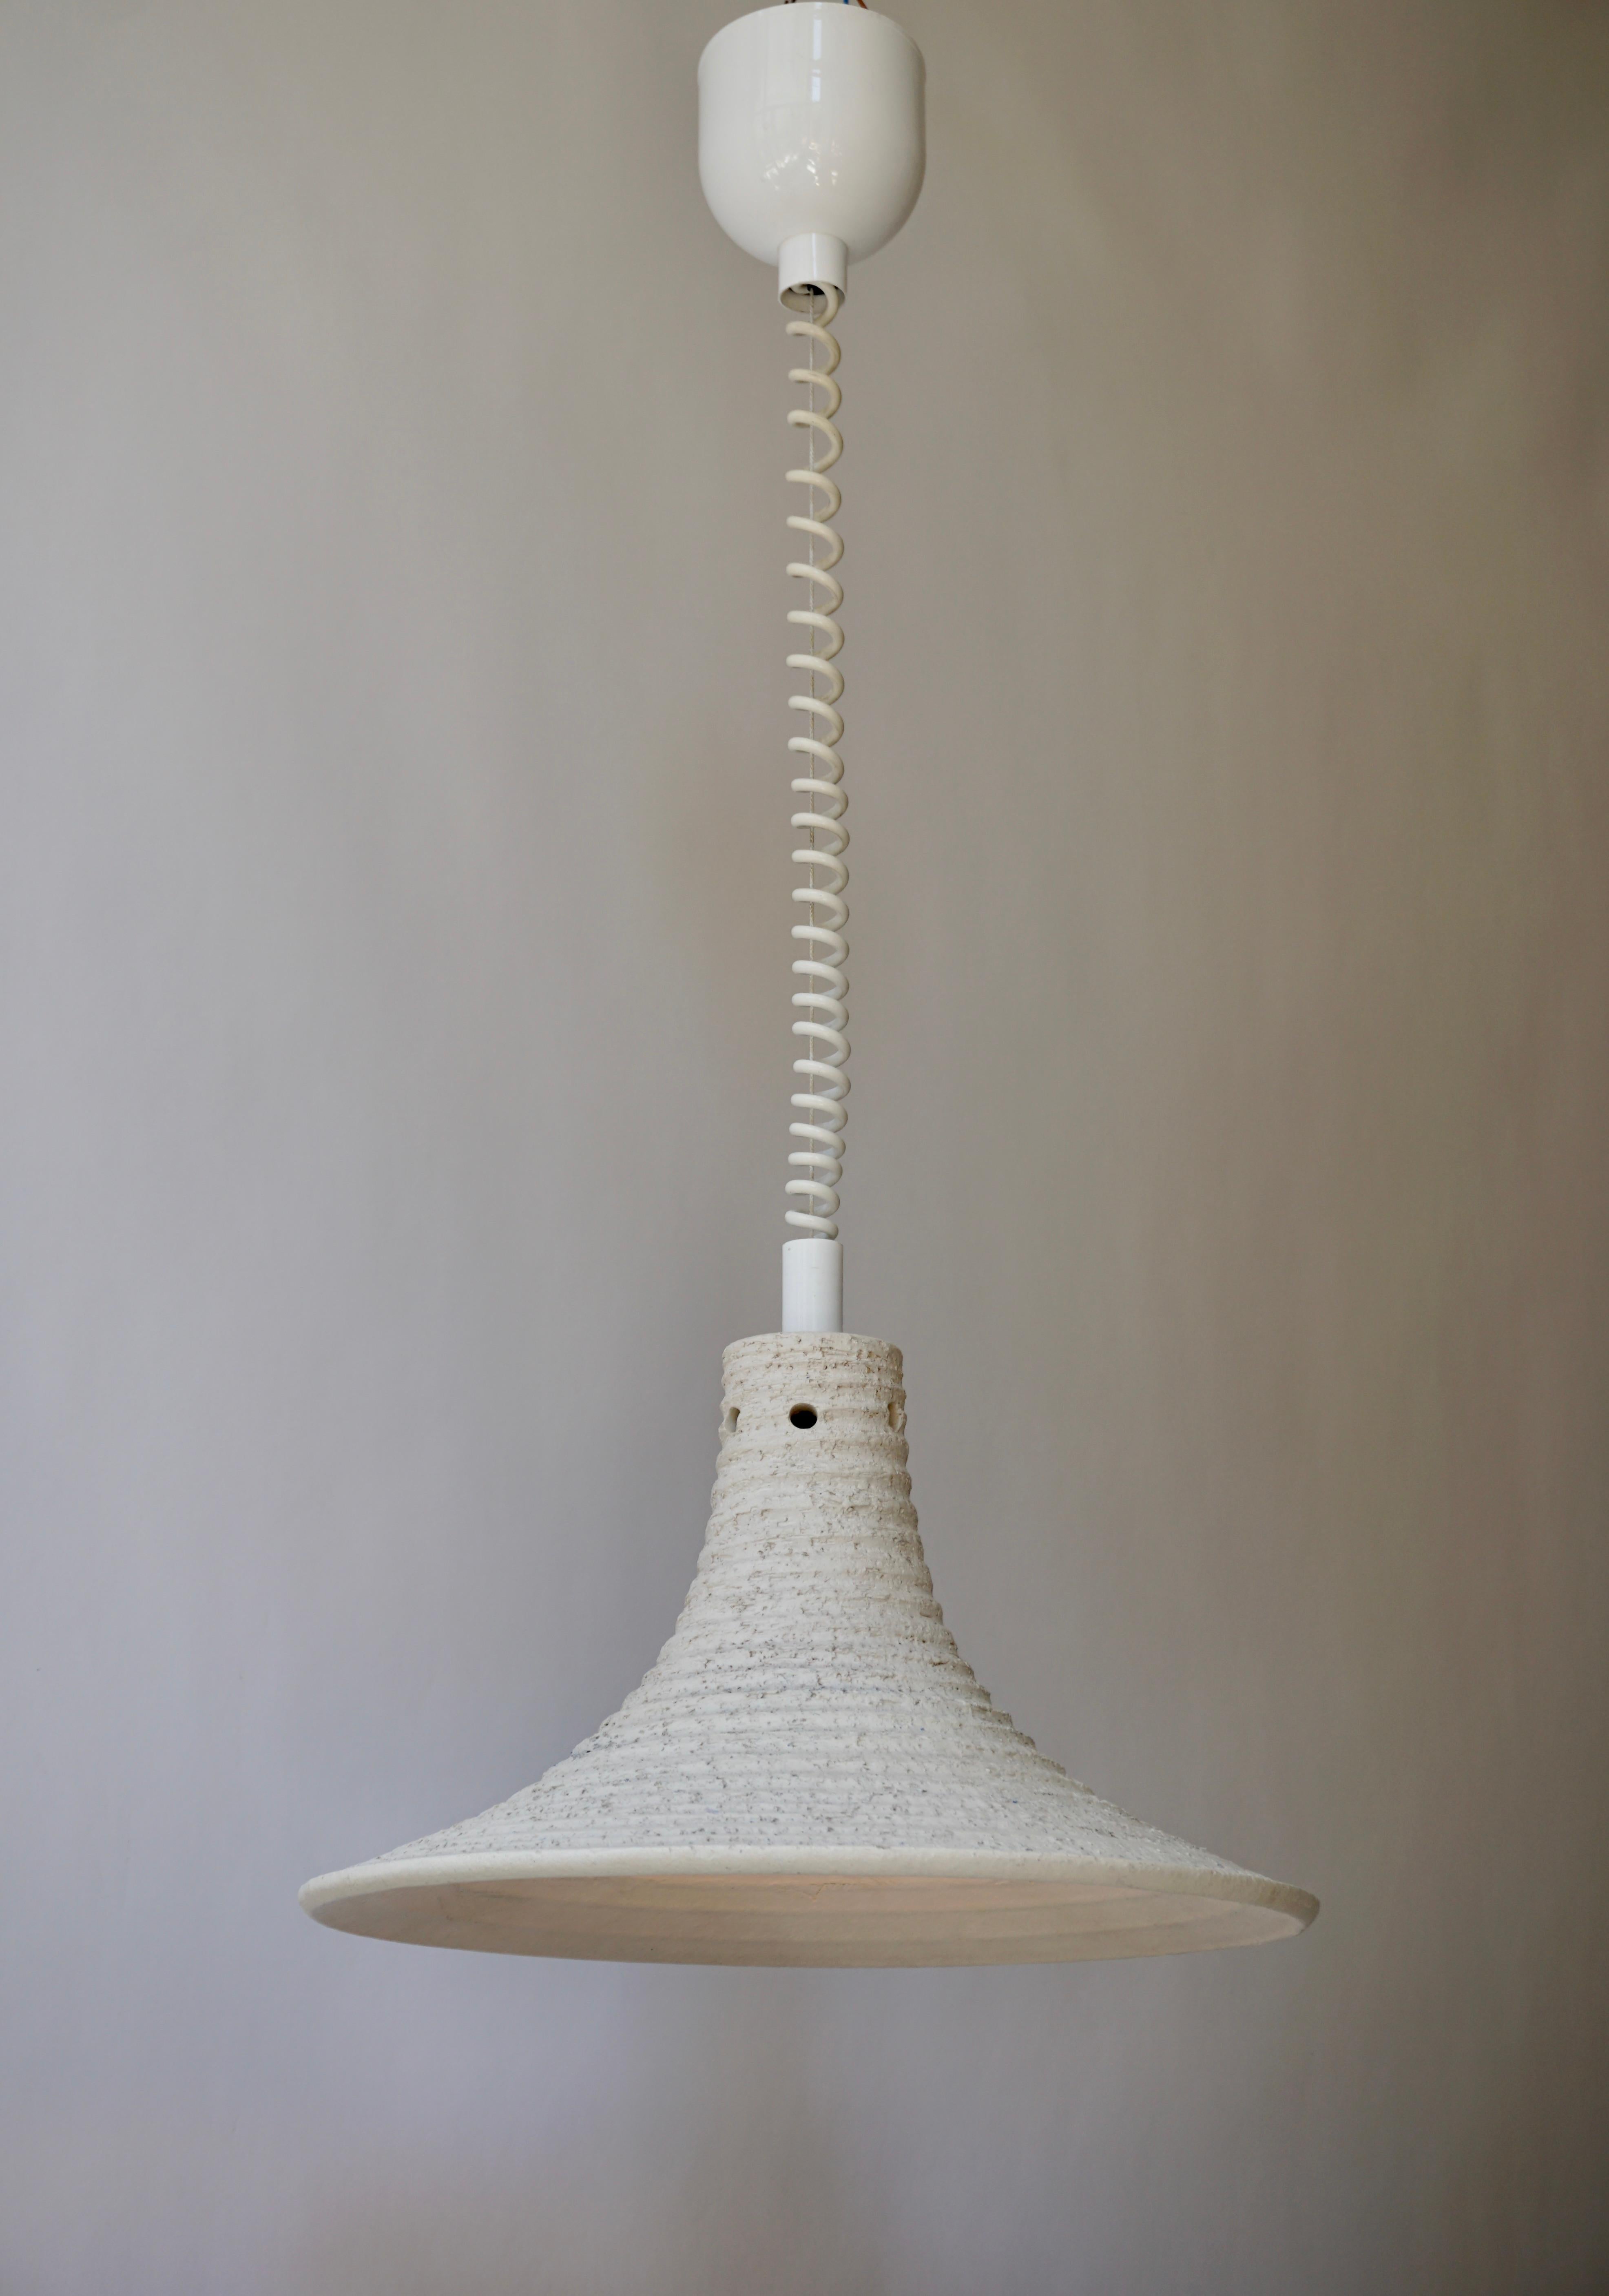 Adjustable white ceramic pendant light, Italy 1950s.
Diameter 41 cm. Height fixture 23 cm.
Minimum height 70 cm.
Maximum height 120 cm.